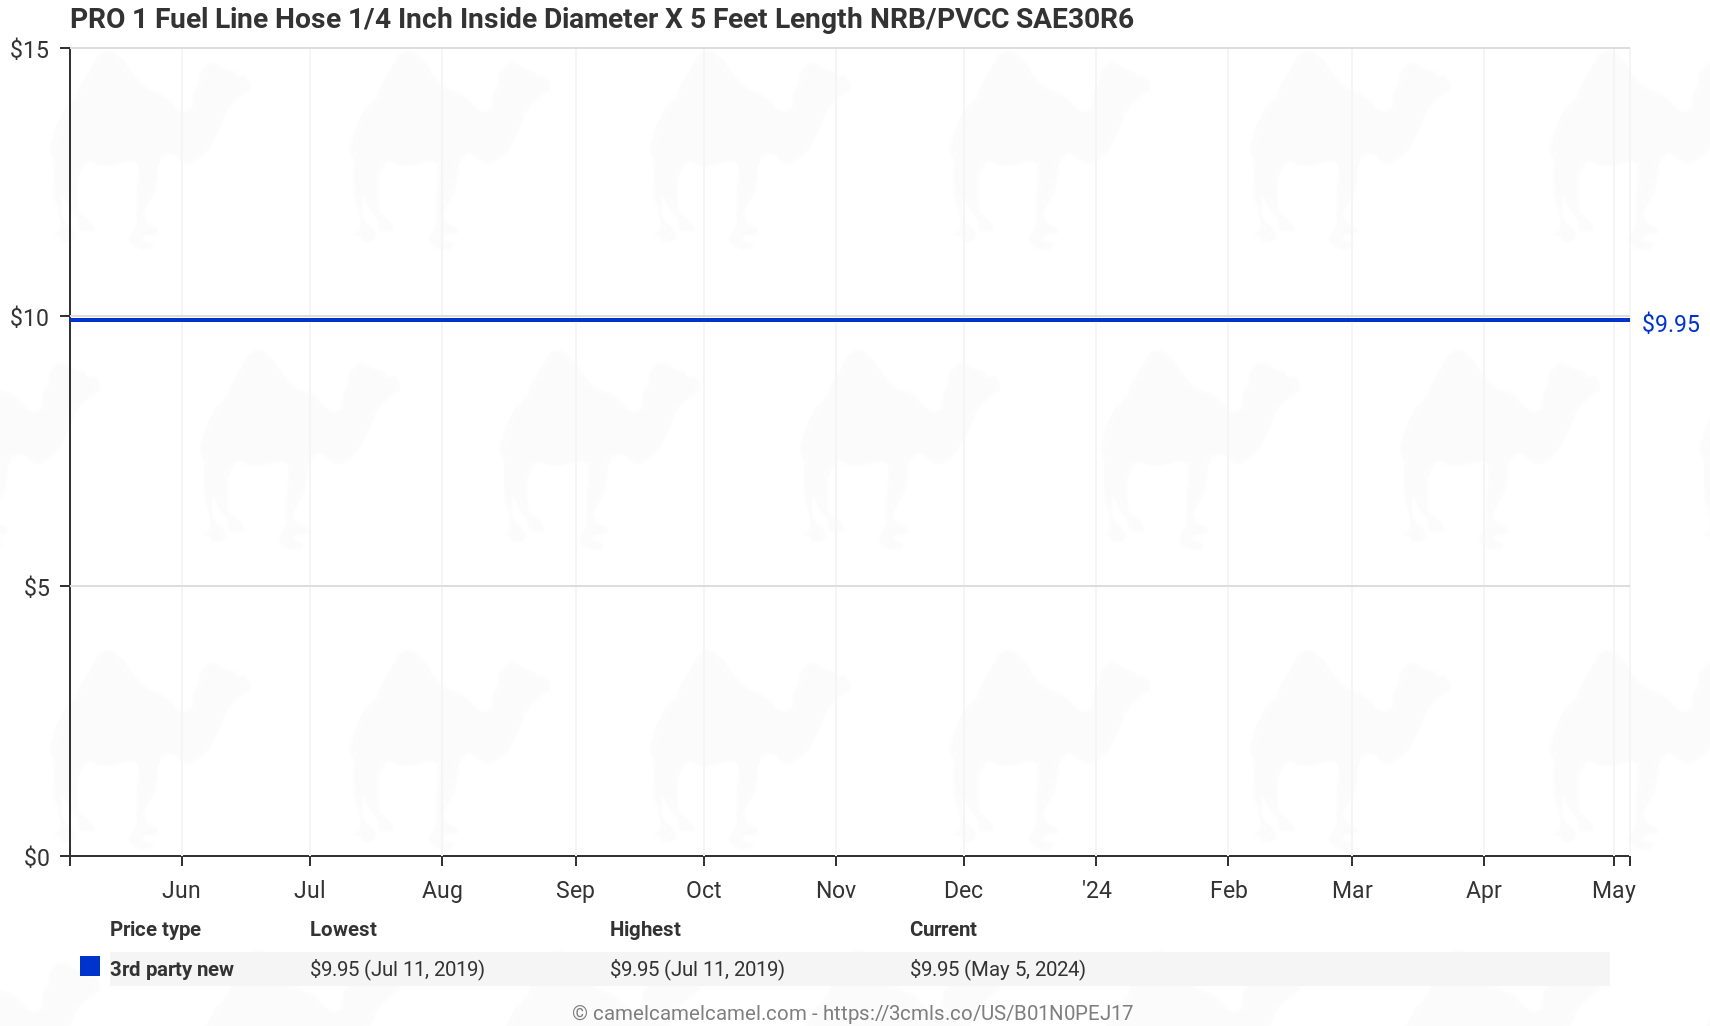 PRO 1 Fuel Line Hose 1/4 Inch Inside Diameter X 5 Feet Length NRB/PVCC SAE30R6 - Price History: B01N0PEJ17